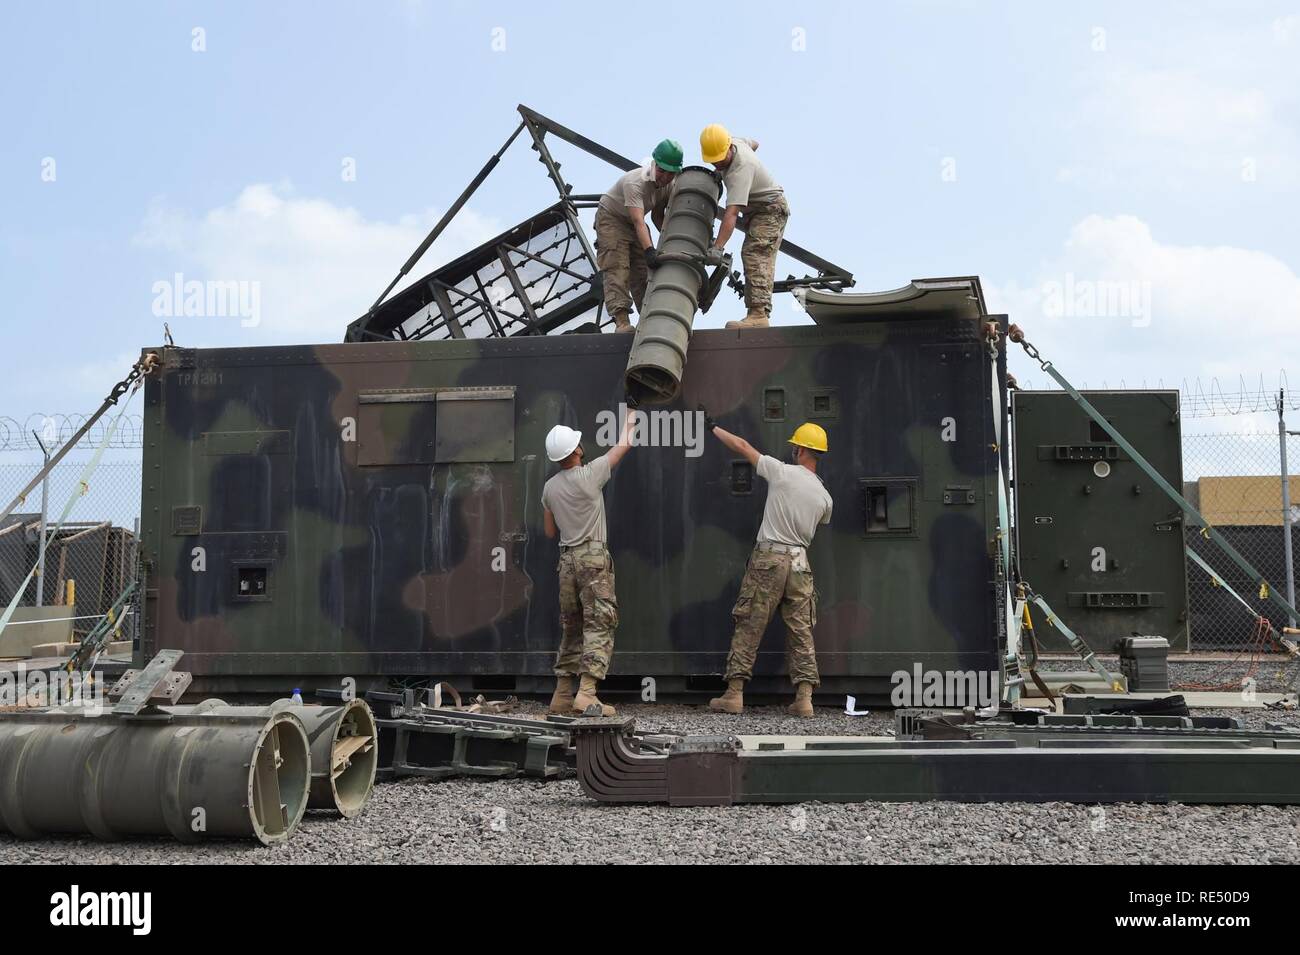 La Fuerza Aérea estadounidense Combined Joint Task Force-Horn miembros de África, 726ª Expedicionaria escuadrón de la Base Aérea de radar systems, quitar la última sección del "Tootsie Roll" la antena de una RPT-19 radar durante el desmontaje de la unidad, el 18 de noviembre de 2016, en el campamento Lemonnier, Djibouti. El desmontaje y almacenamiento de esta unidad se completó en menos de una semana y participa de cuatro millones de dólares de equipo. Combined Joint Task Force-Horn de África es un esfuerzo multinacional para llevar a cabo la cooperación de seguridad de teatro, combatir el extremismo violento y permitir la libertad de movimiento dentro de África oriental en orden Foto de stock